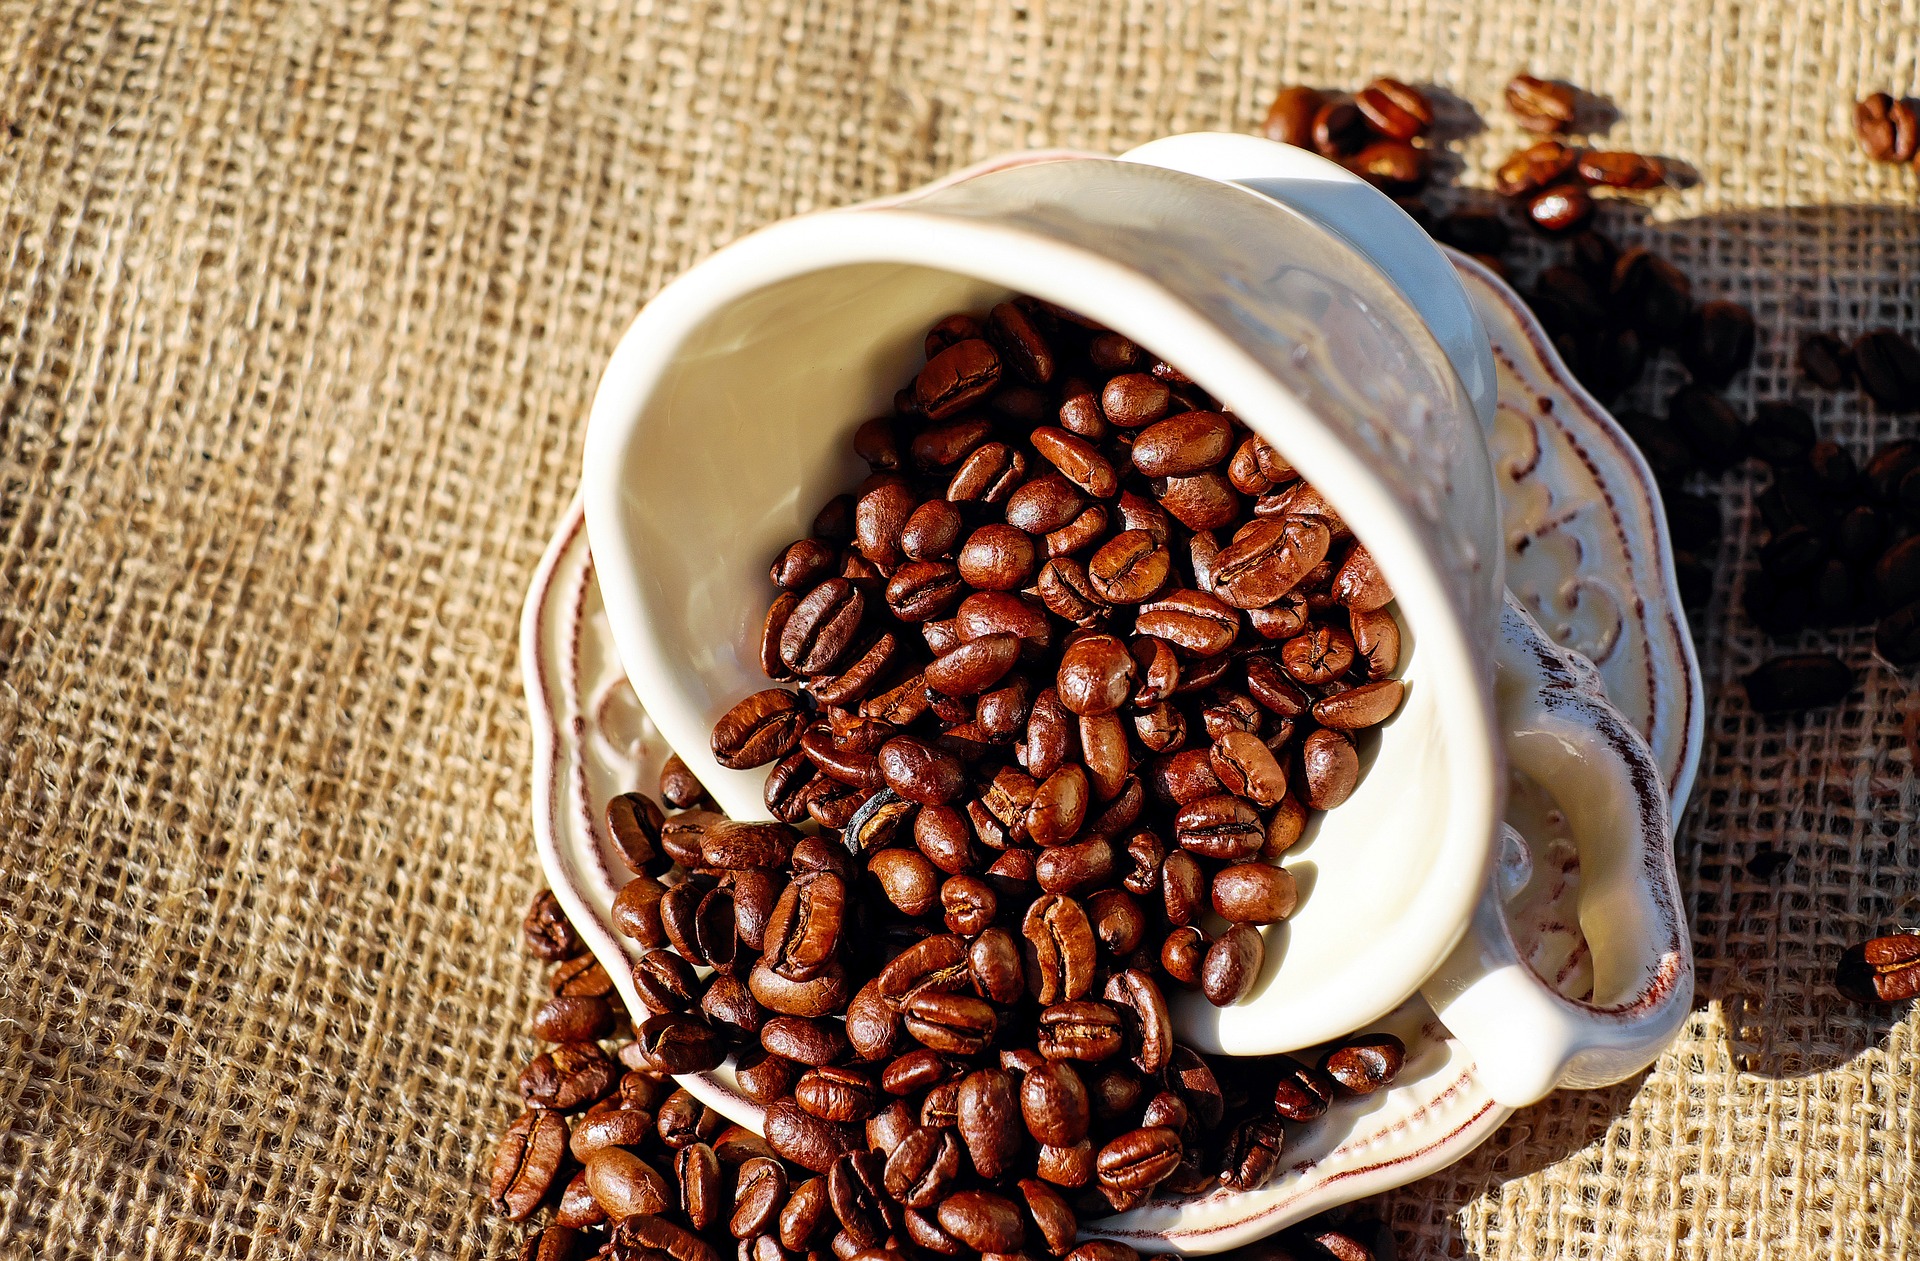 Daar is-ie dan: de goede oude koffieboon: zelfs gedécafeïneerd is hij nog goed voor een overlijdenskans vermindering van 14%.